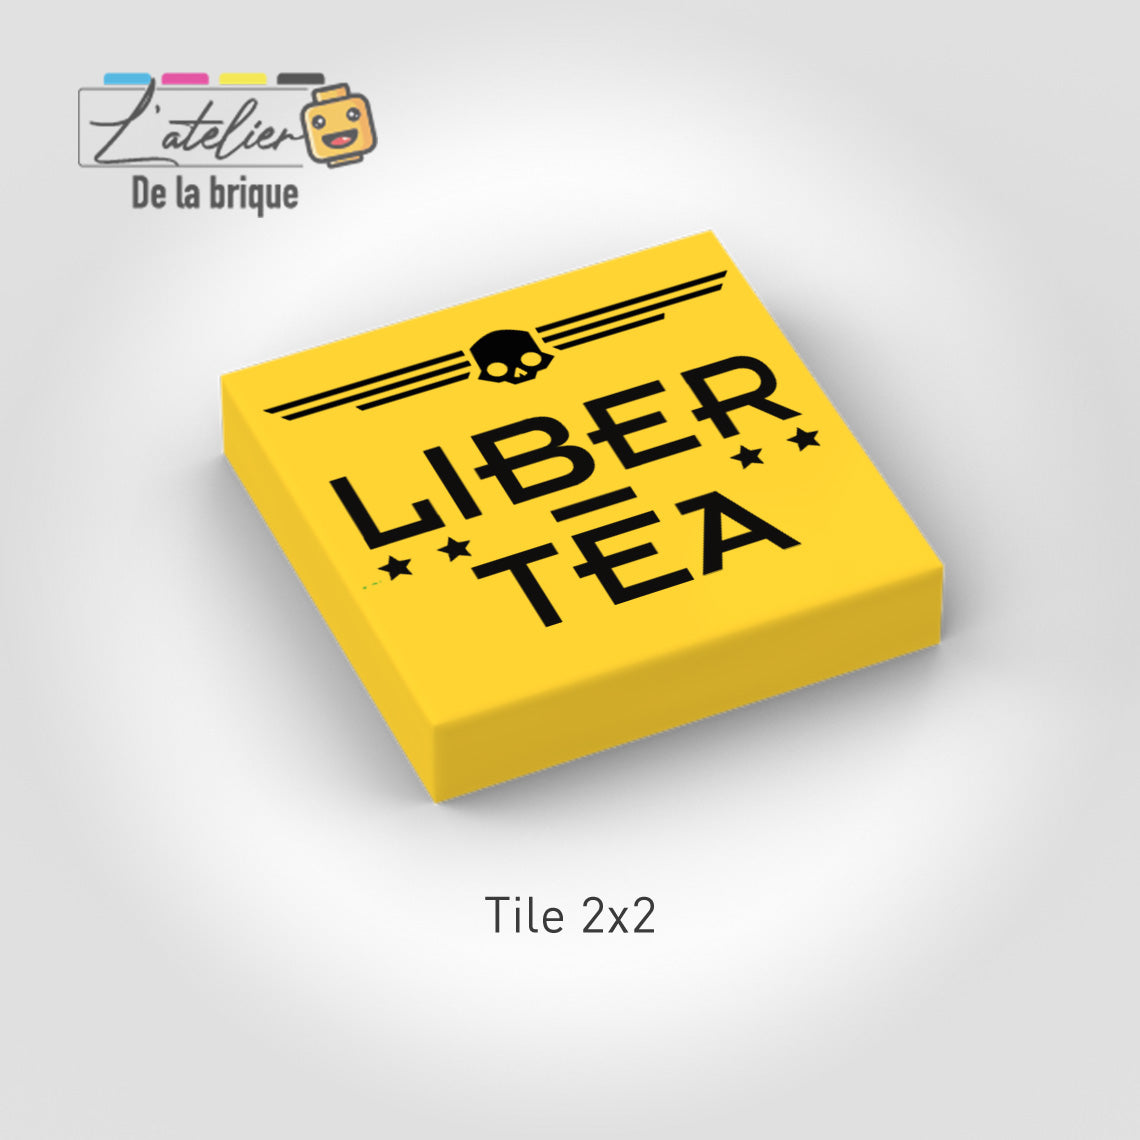 Tile "Liber-Tea"